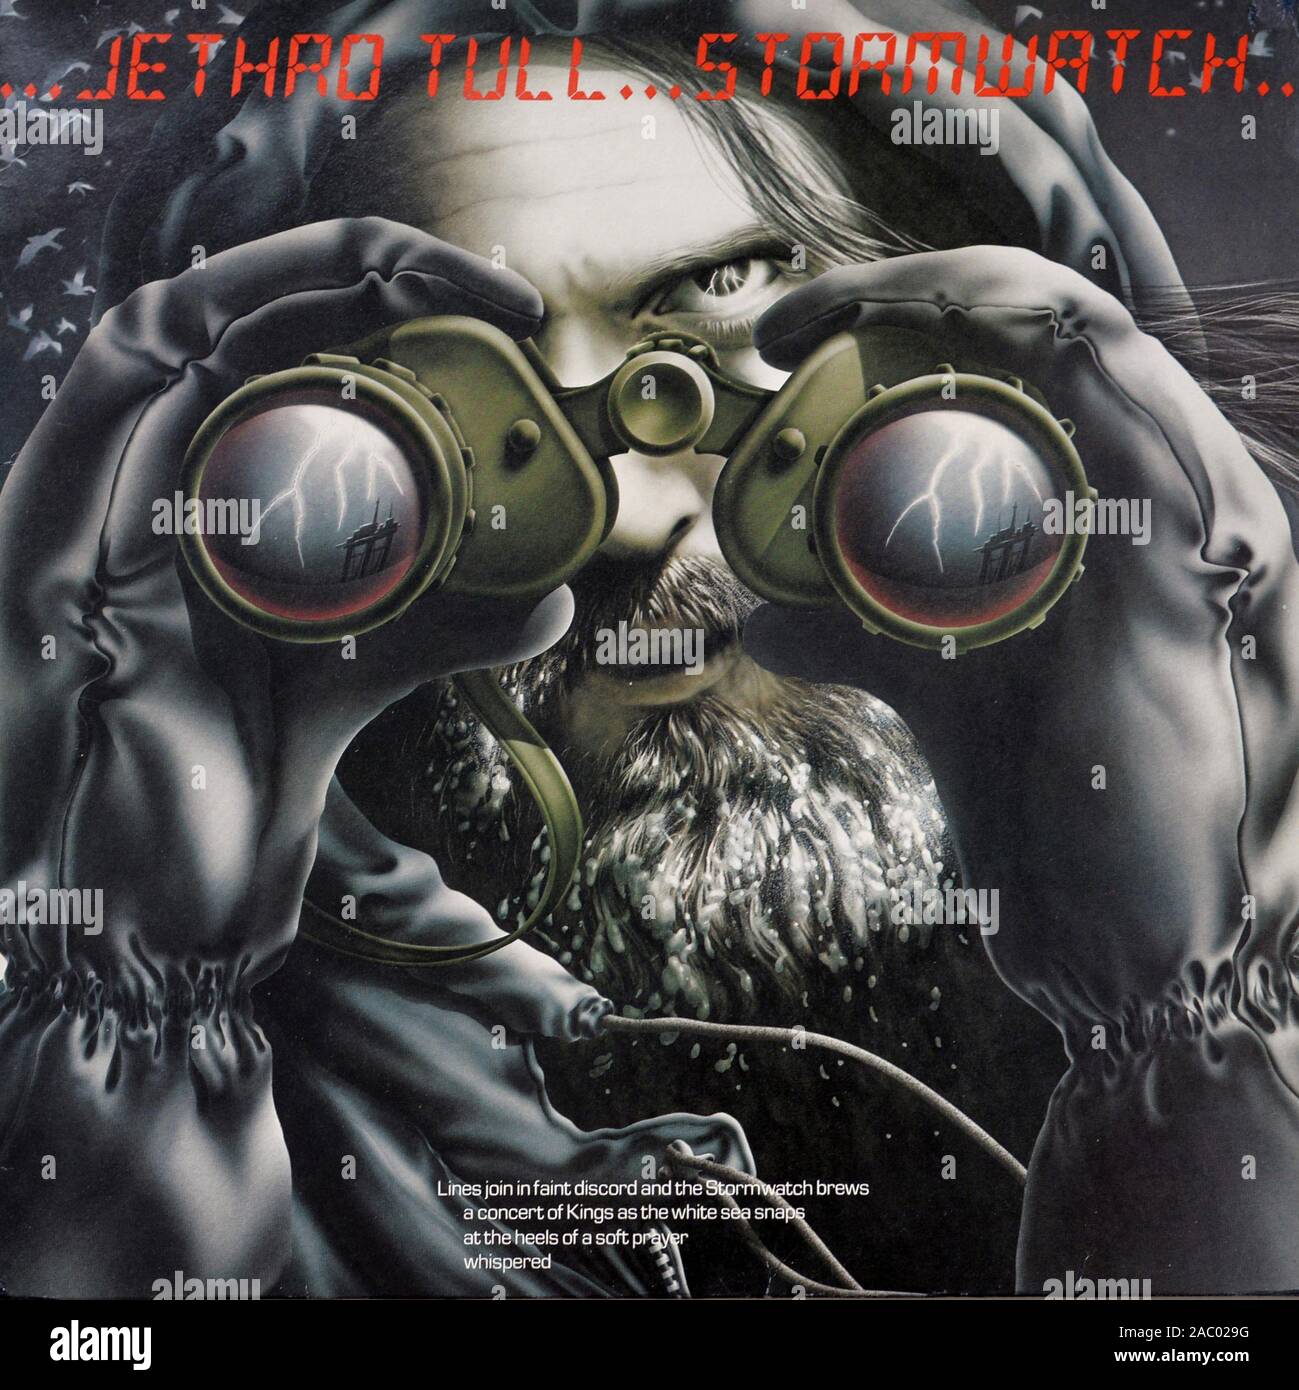 JETHRO TULL Storm Watch - Vintage vinyl album cover Stock Photo - Alamy